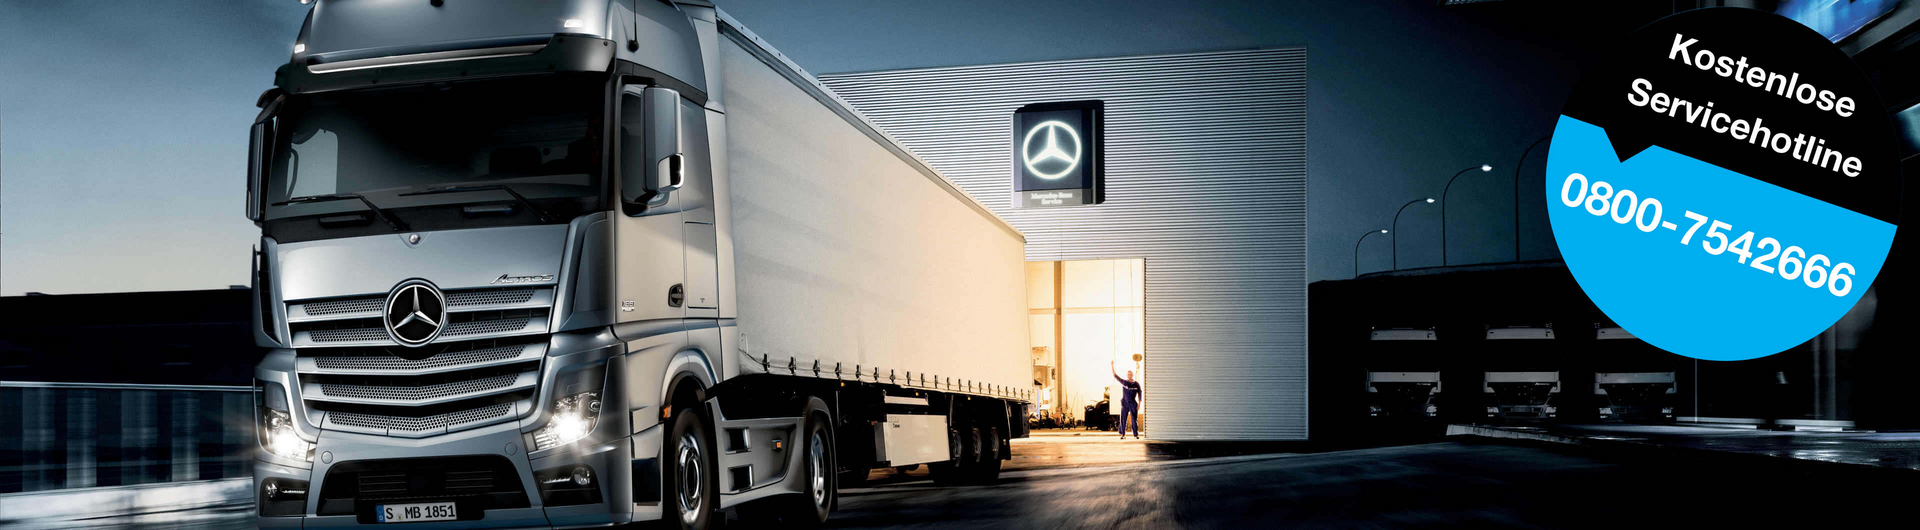 Wartung, Instandsetzung, HU und mehr - an den RKG Service-Standorten für Mercedes-Benz Trucks erhalten Sie den vollen Service für Ihren LKW vom Spezialisten